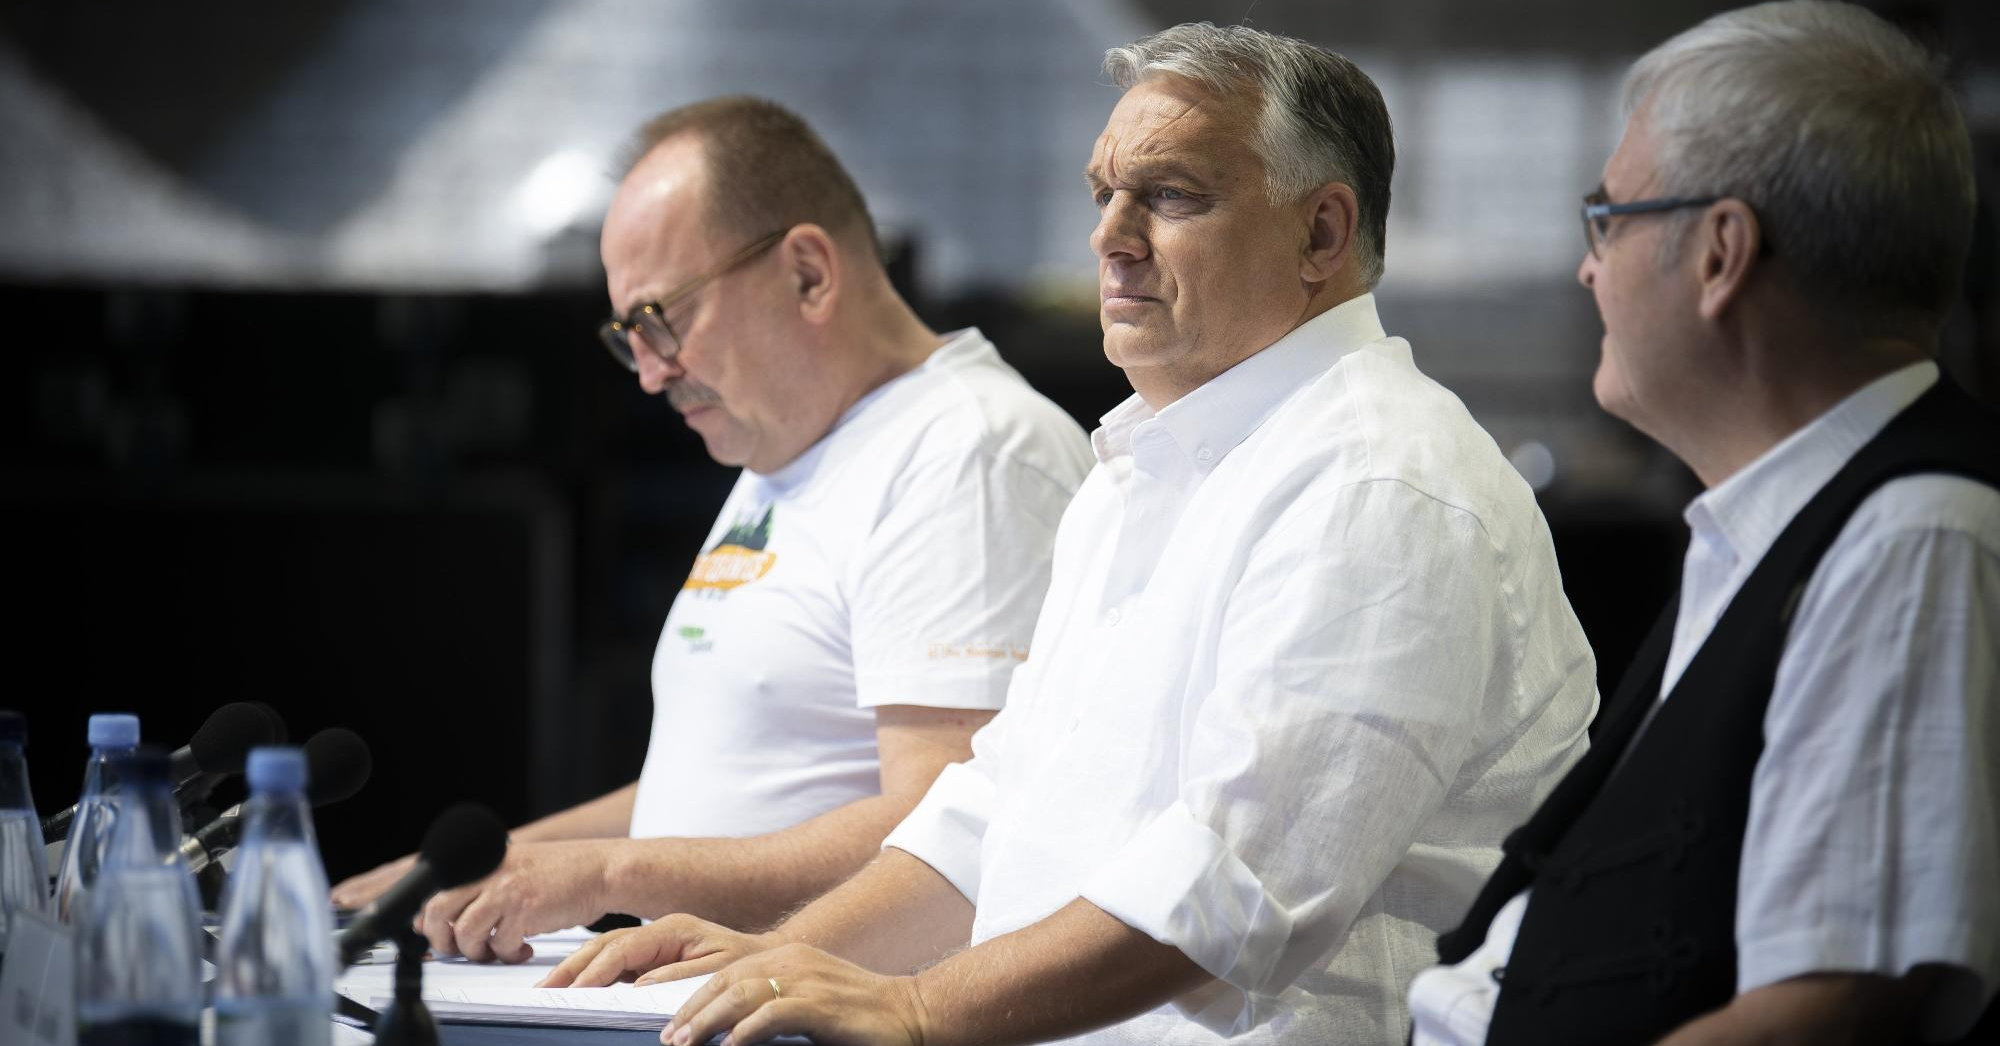 Nem zavarja Orbán „náci beszéde” az amerikai konzervatívokat